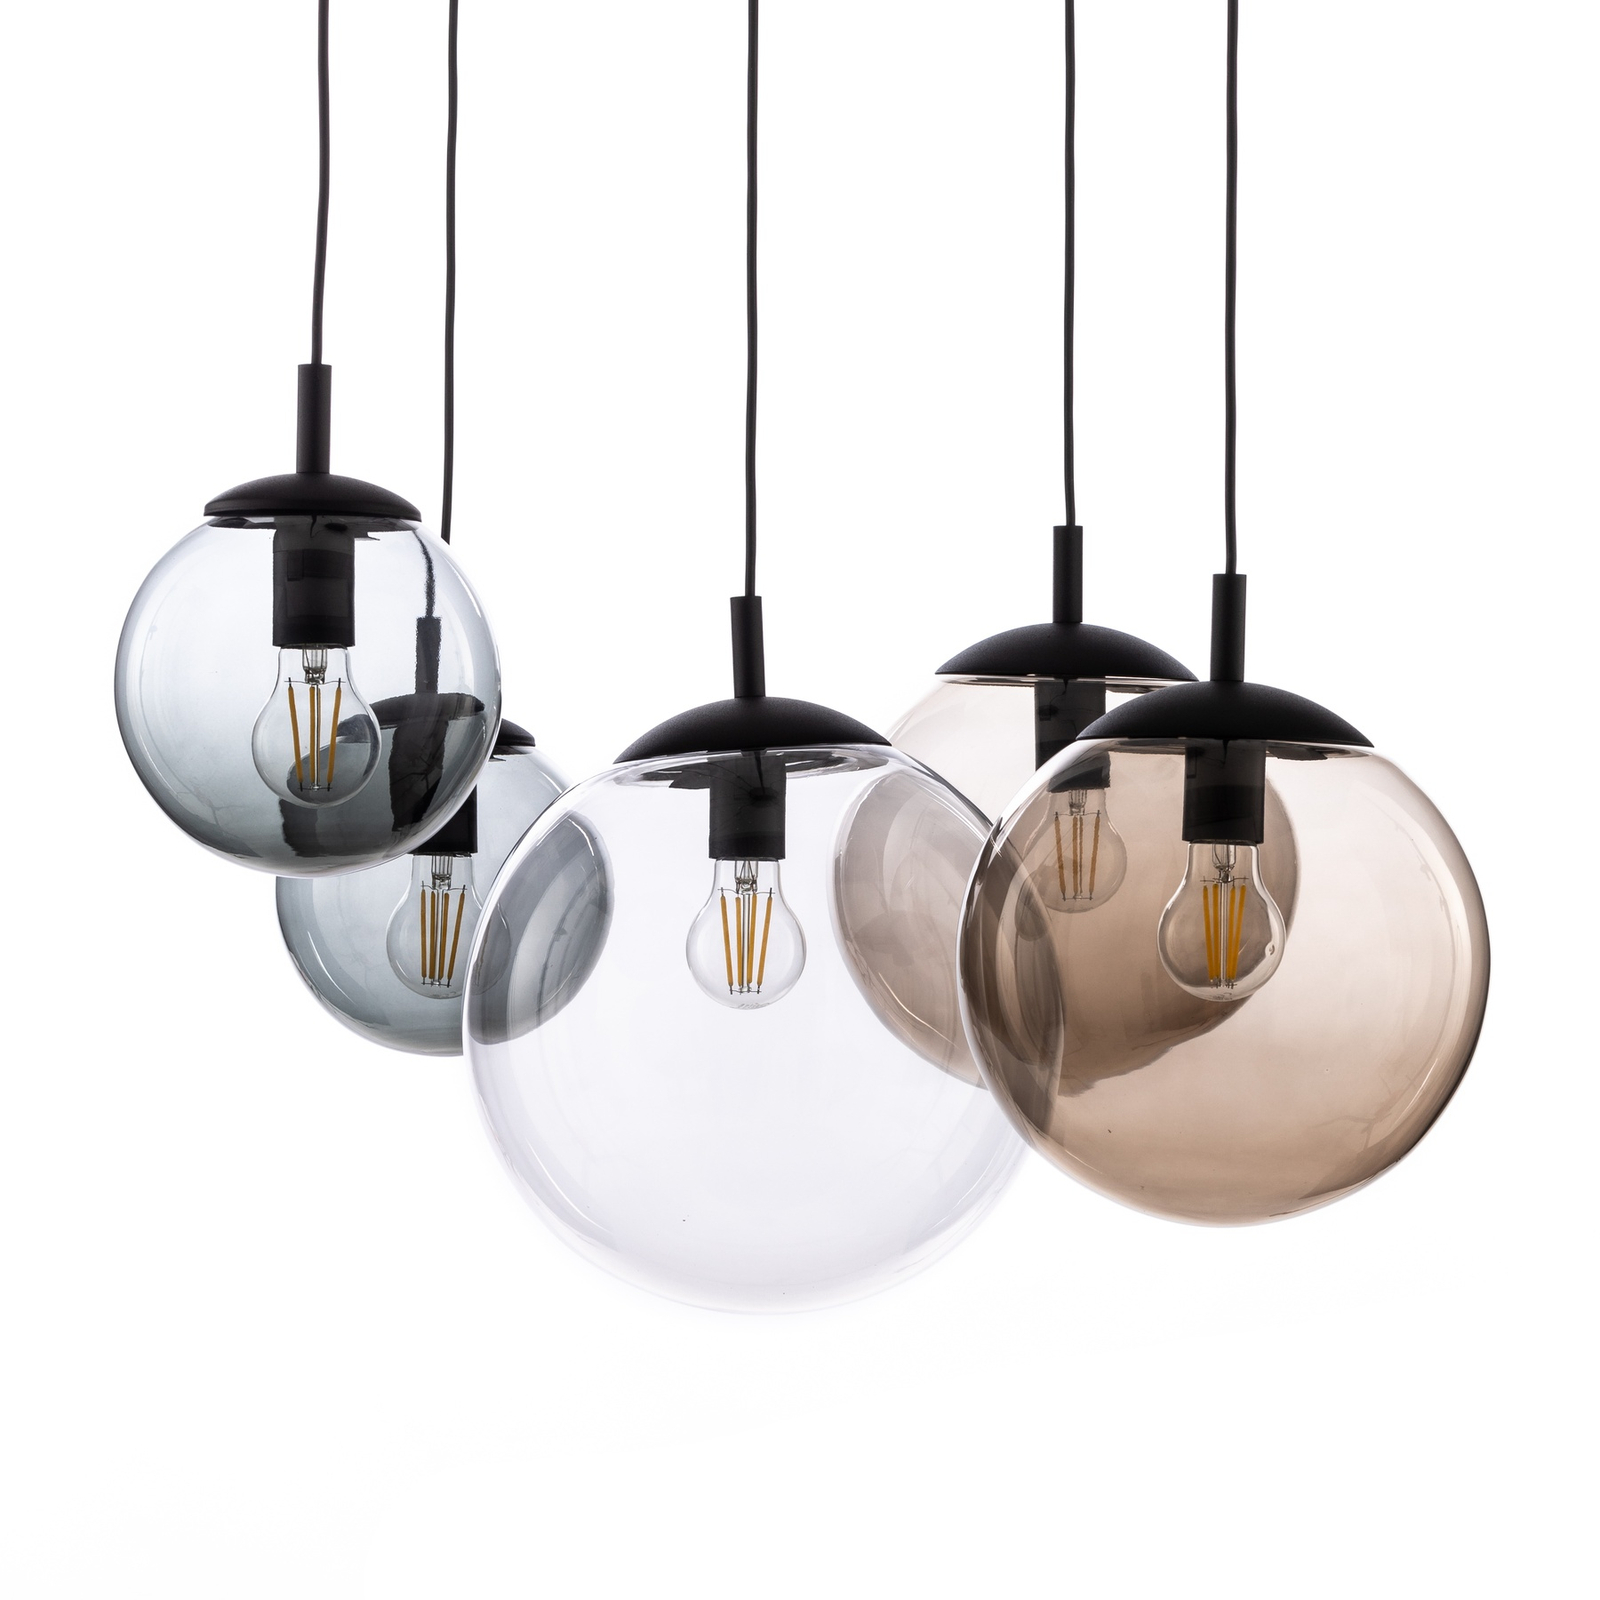 Esme pendant light, glass, multicoloured, 5-bulb, decentralised